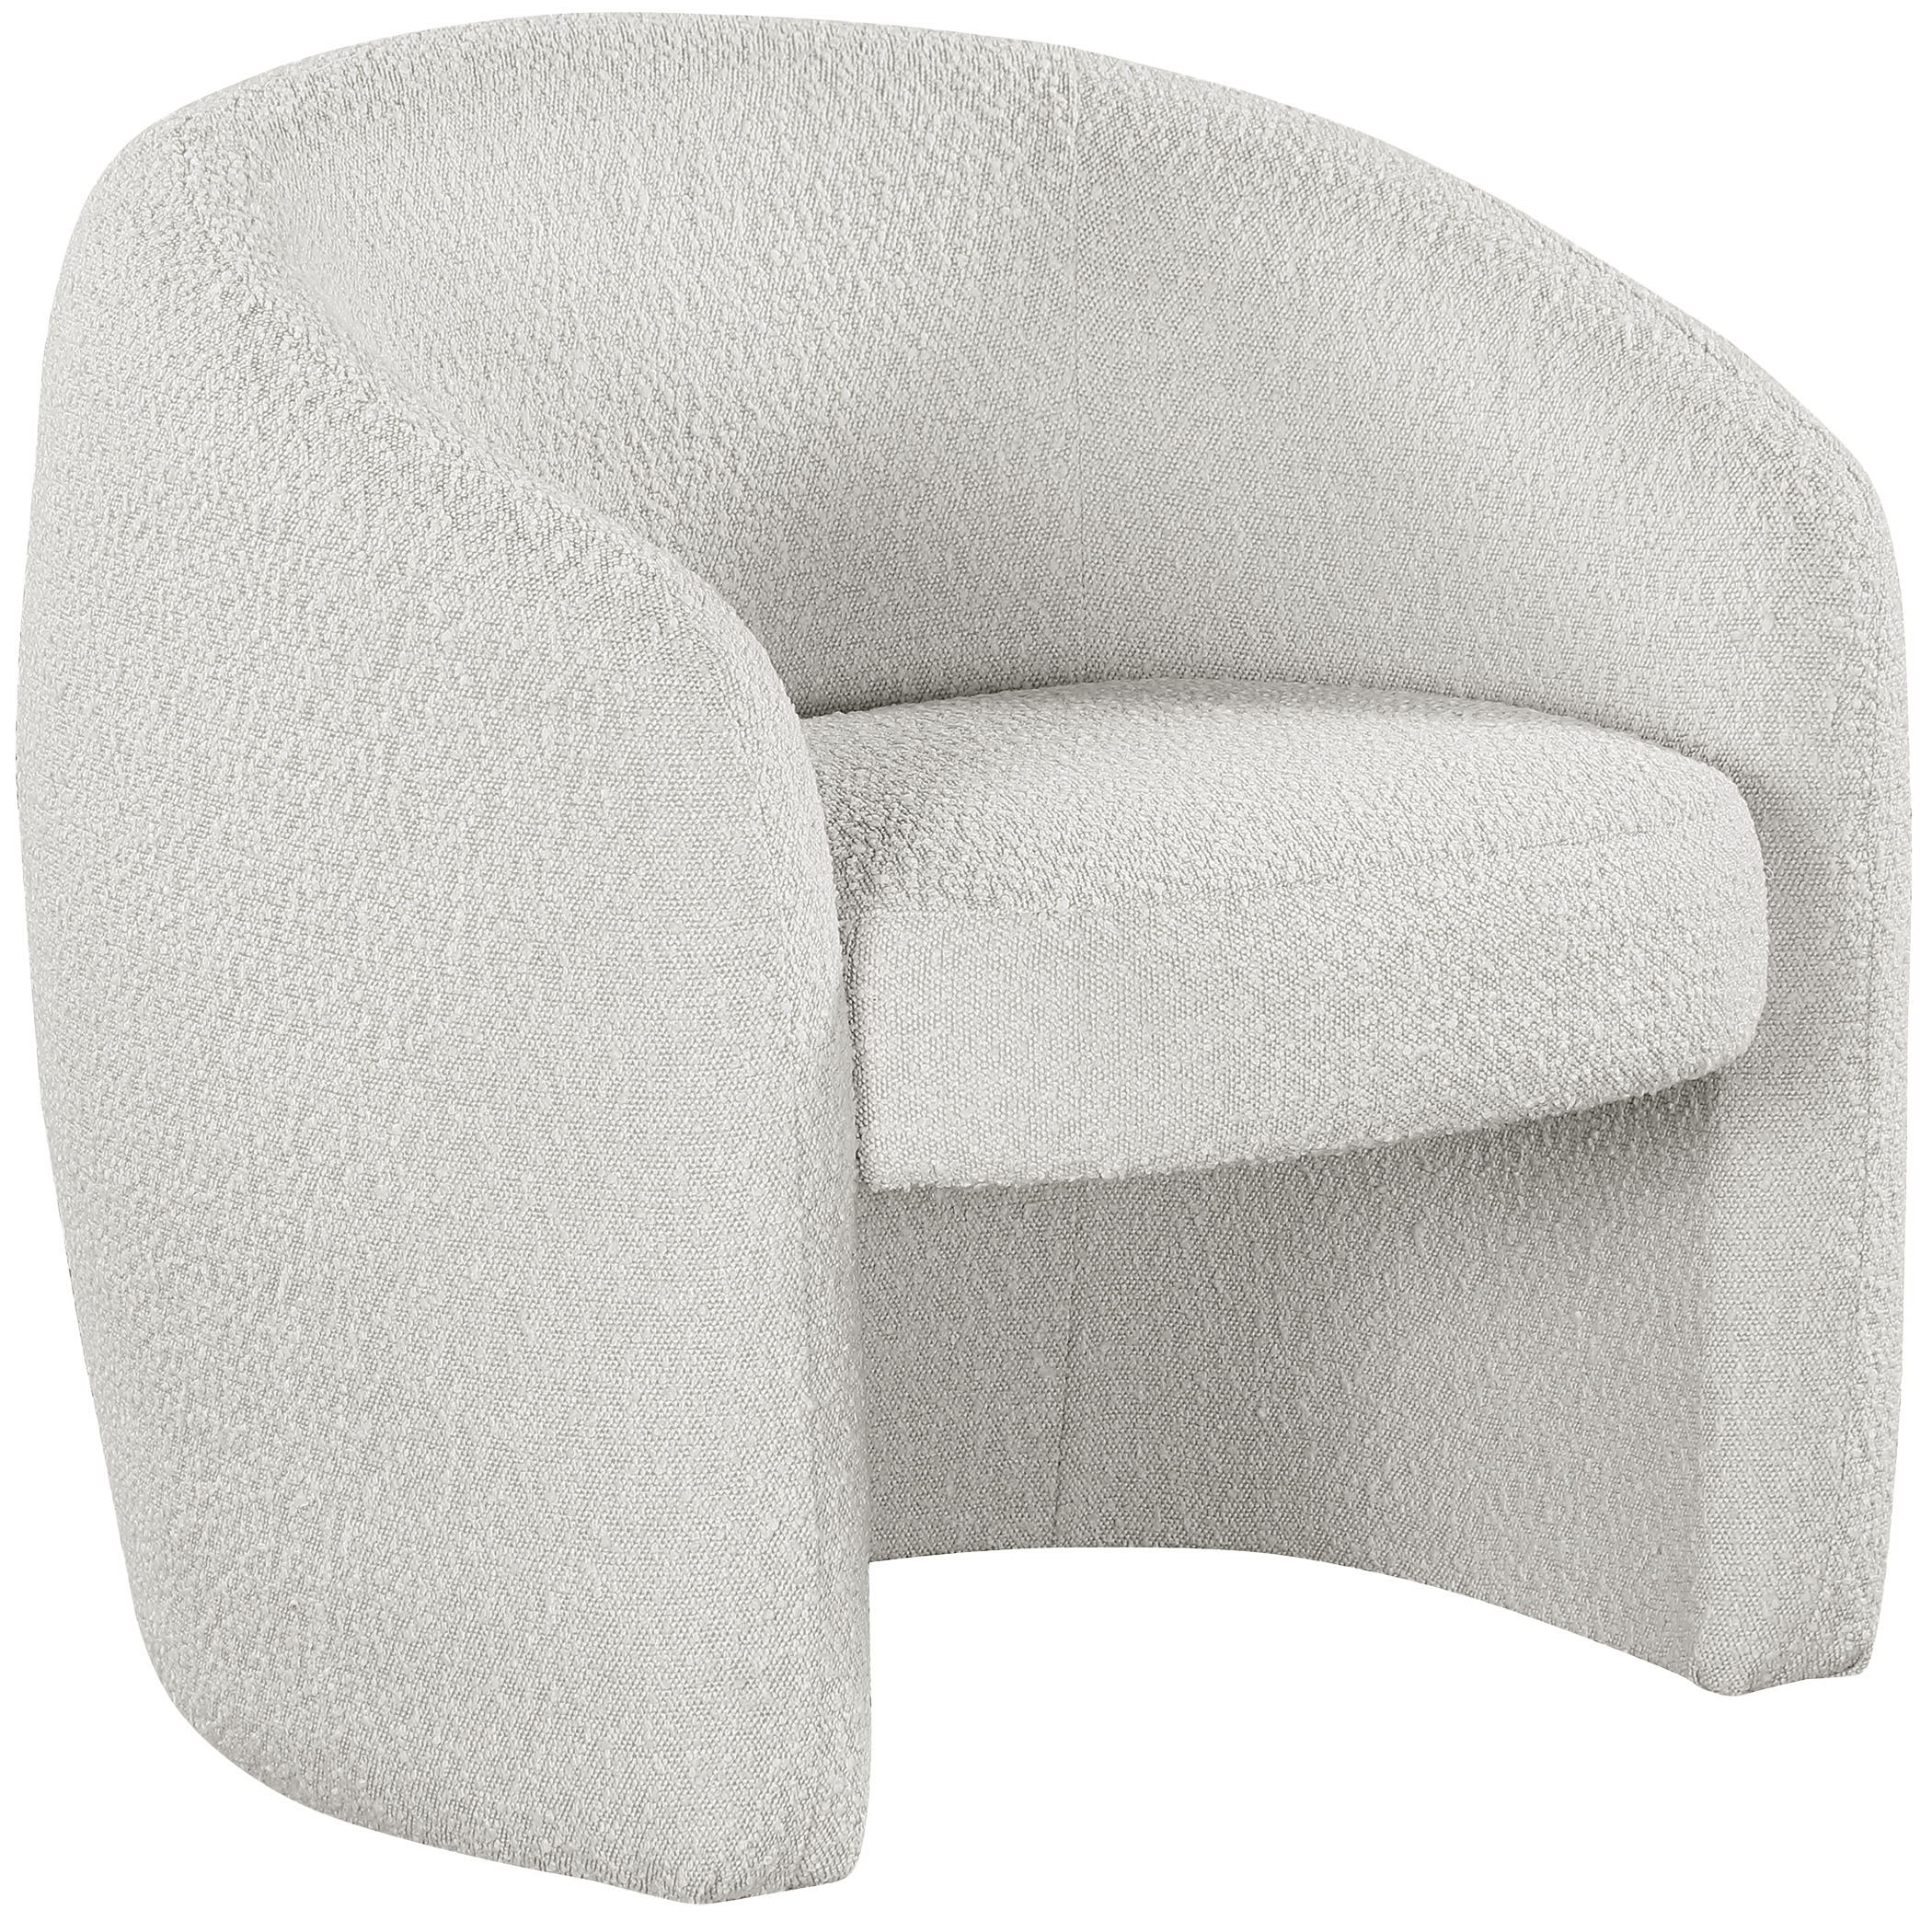 Acadia - Accent Chair - Cream - Fabric